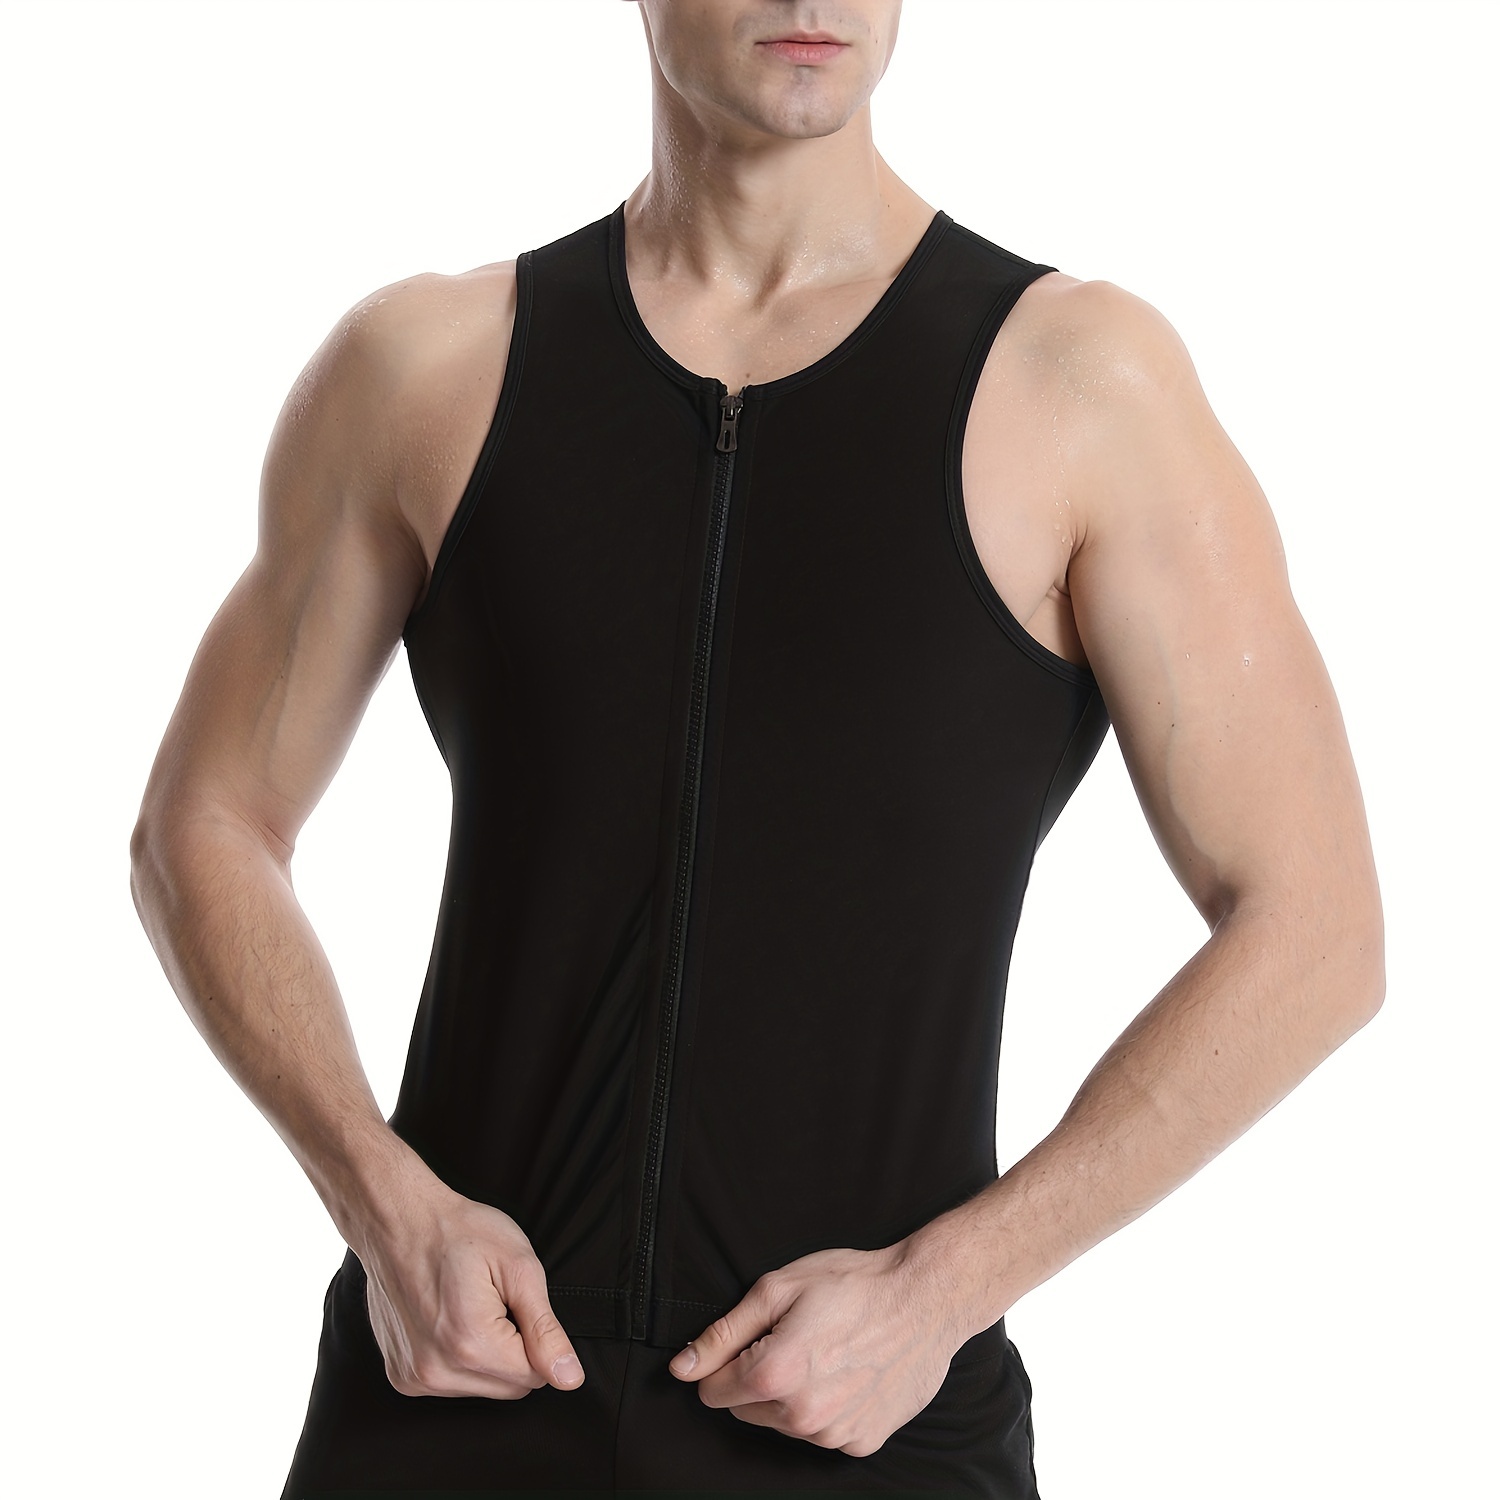 Men's Sauna Suit Shirt - Heat Trapping Sweat Compression Vest, Shapewear  Top, Gym Exercise Versatile Shaper Waist Trainer